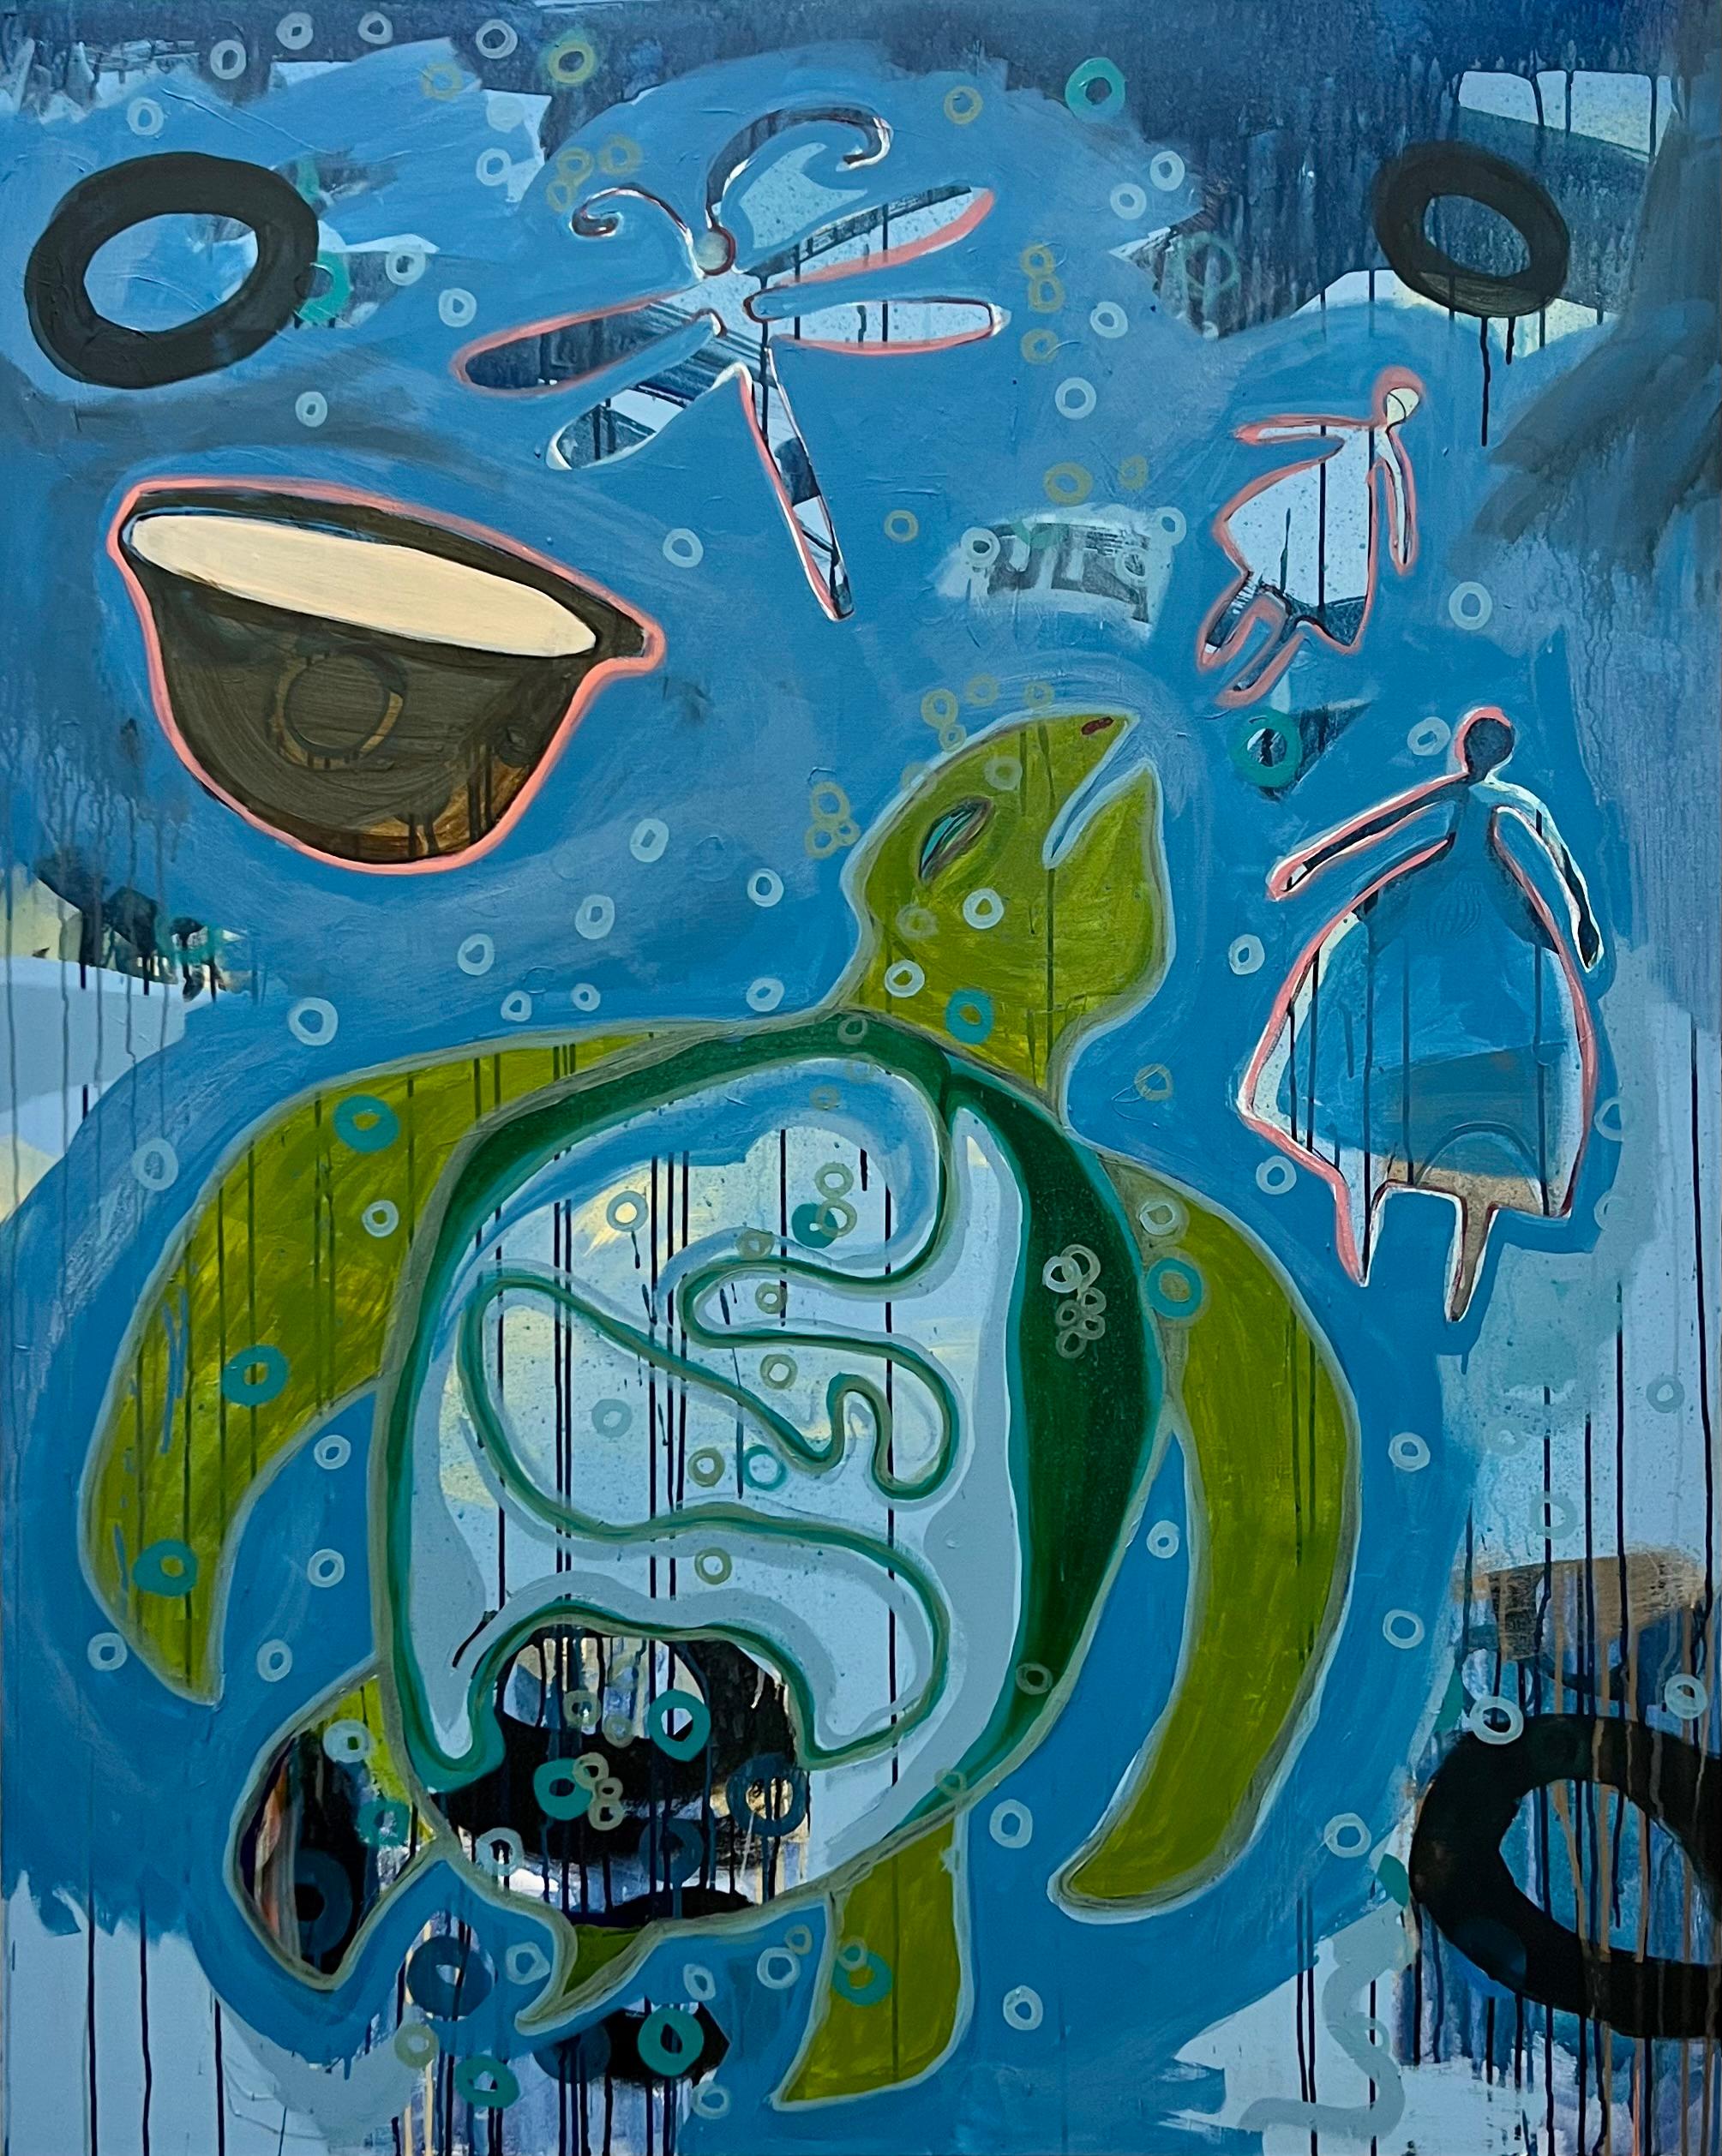 The Dream, von Melanie Yazzie, Navajo, Gemälde, vertikal, Schildkröte, Blau, Grün

Als Grafikerin, Malerin und Bildhauerin stützt sich meine Arbeit auf mein reiches Diné- (Navajo-) Erbe. Mit meinen Arbeiten versuche ich, dem Diktum der Diné (Navajo)